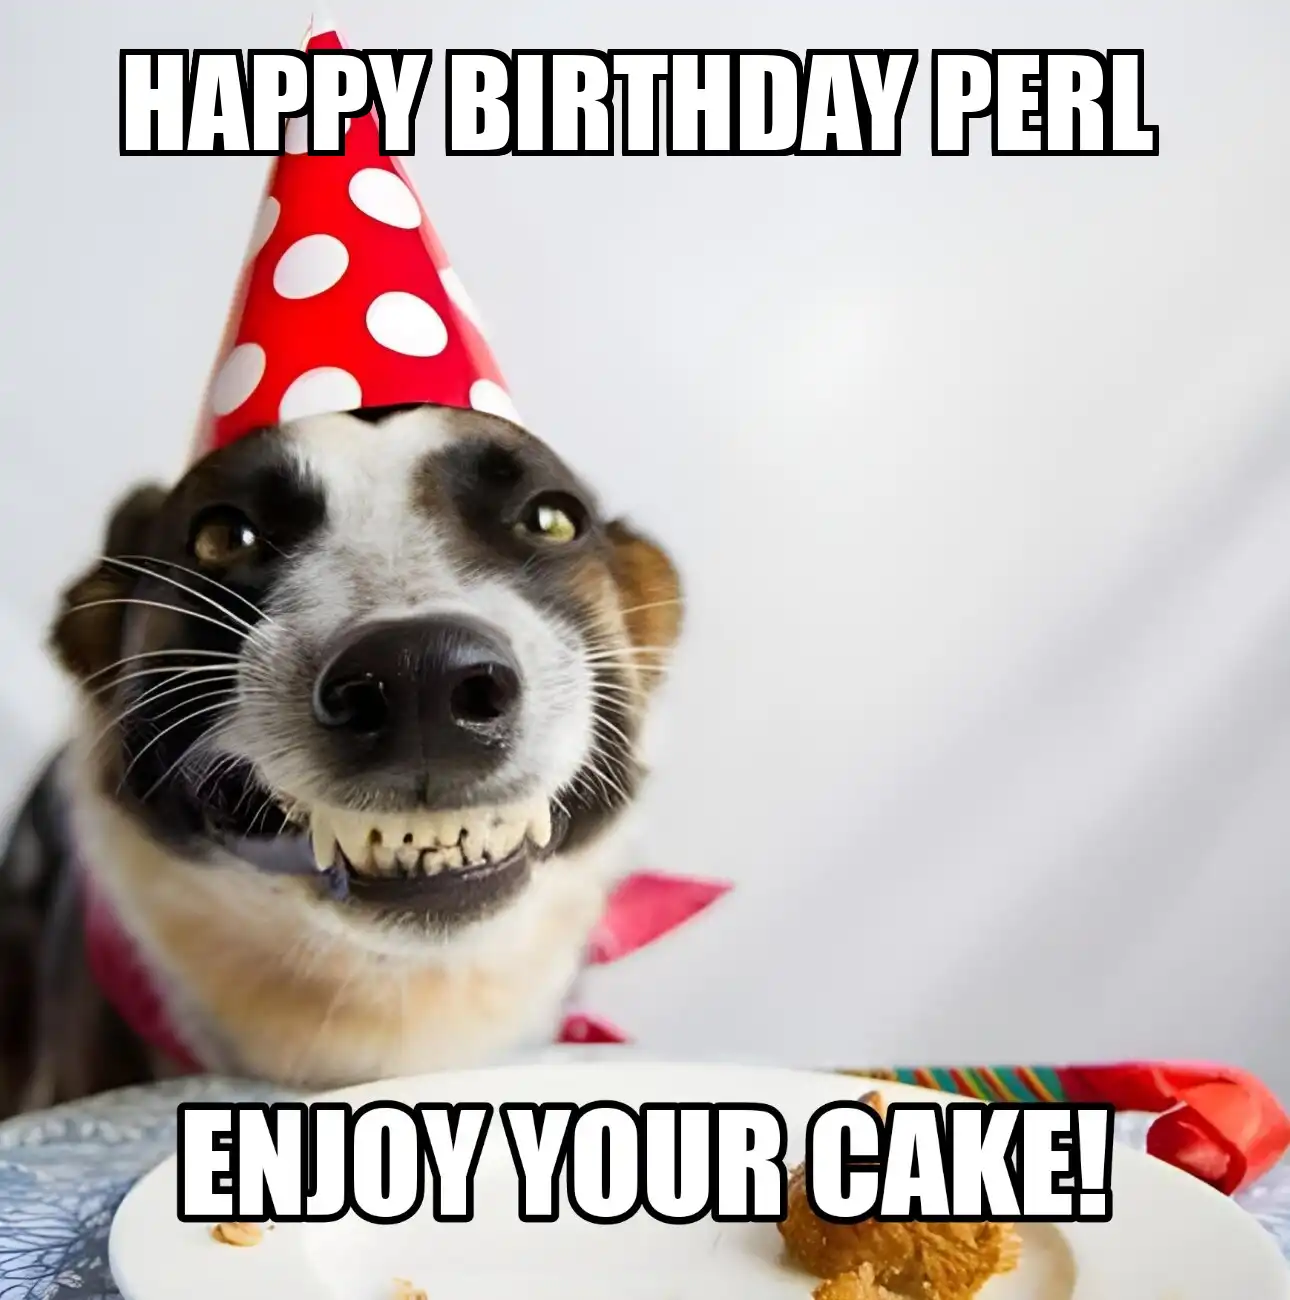 Happy Birthday Perl Enjoy Your Cake Dog Meme